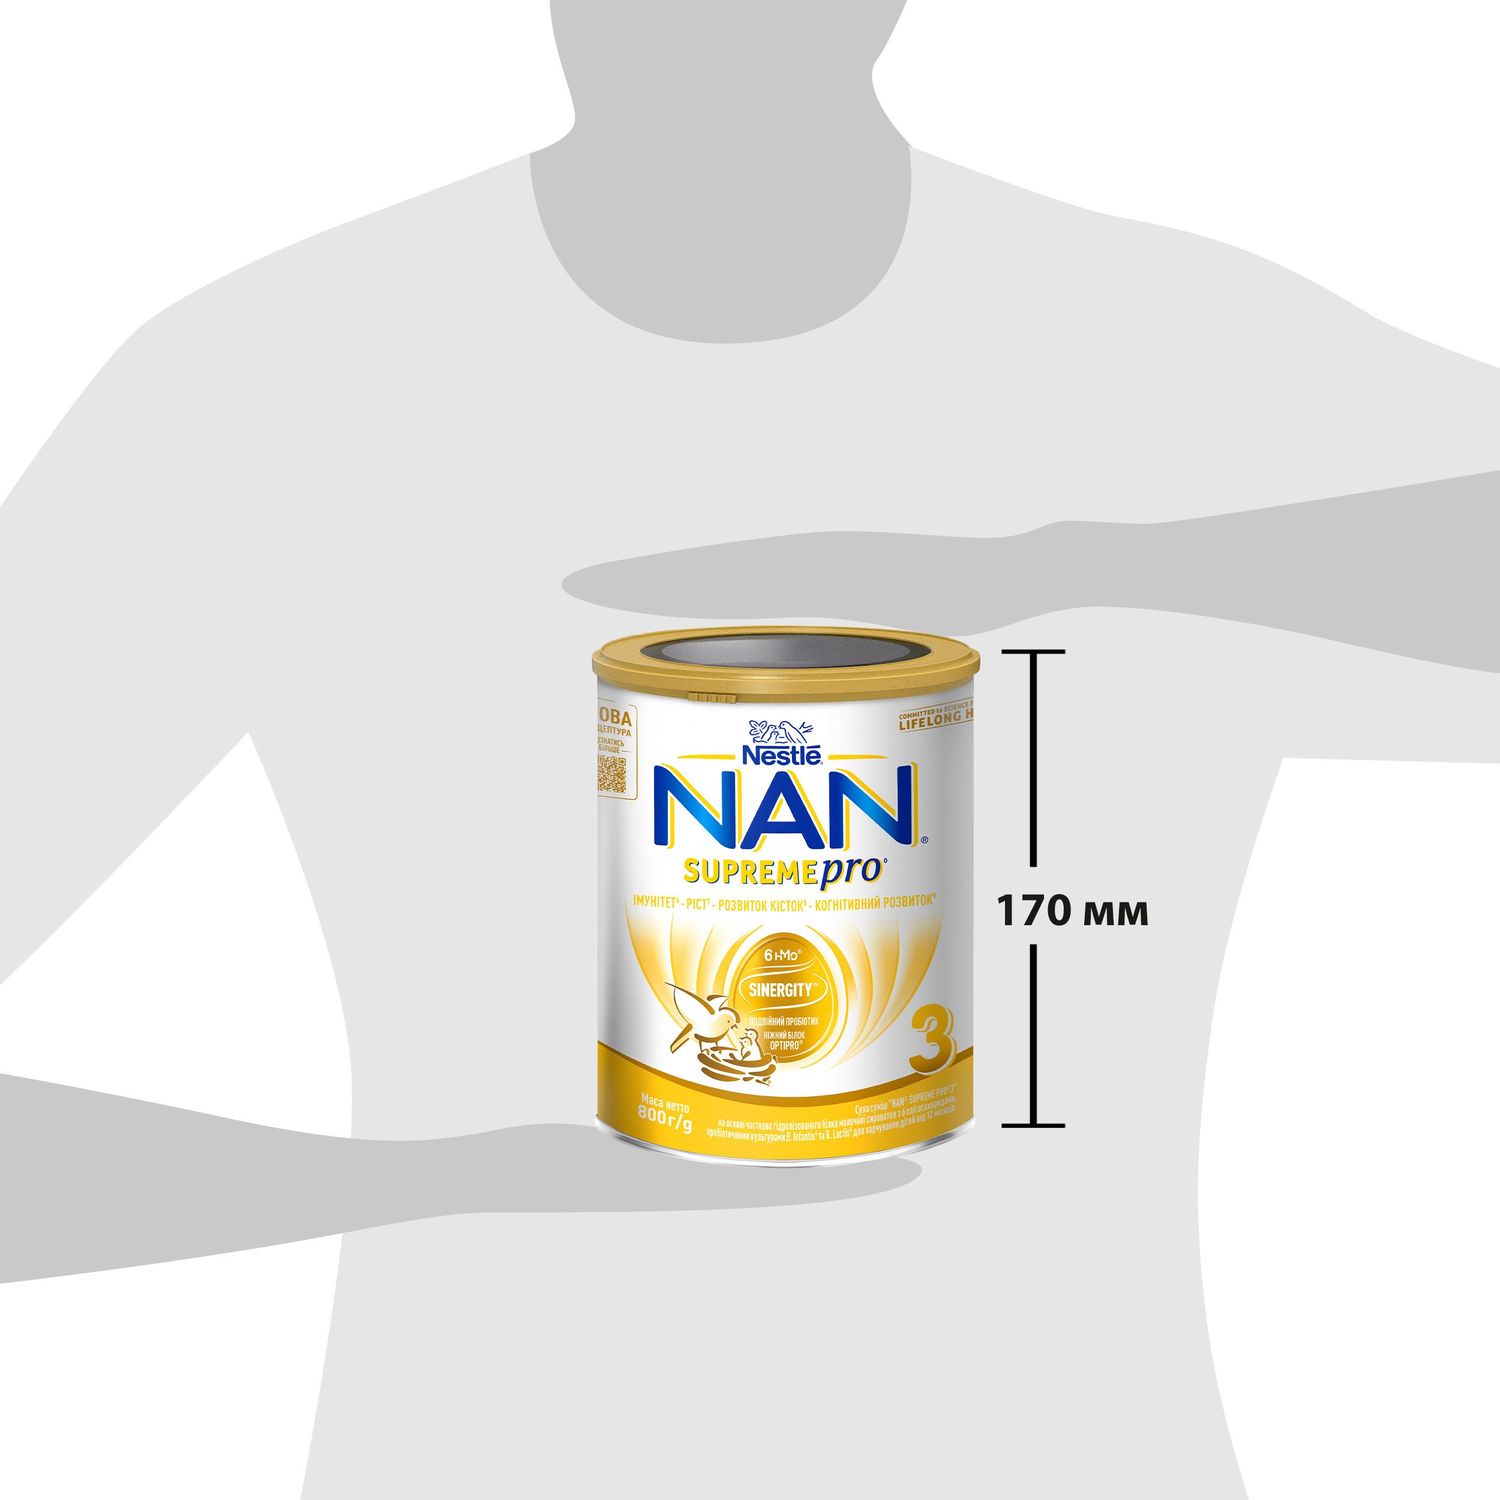 Сухая смесь NAN 3 Supreme Pro с 6 олигосахаридами и двойным пробиотиком для питания детей от 12 месяцев 800 г - фото 9